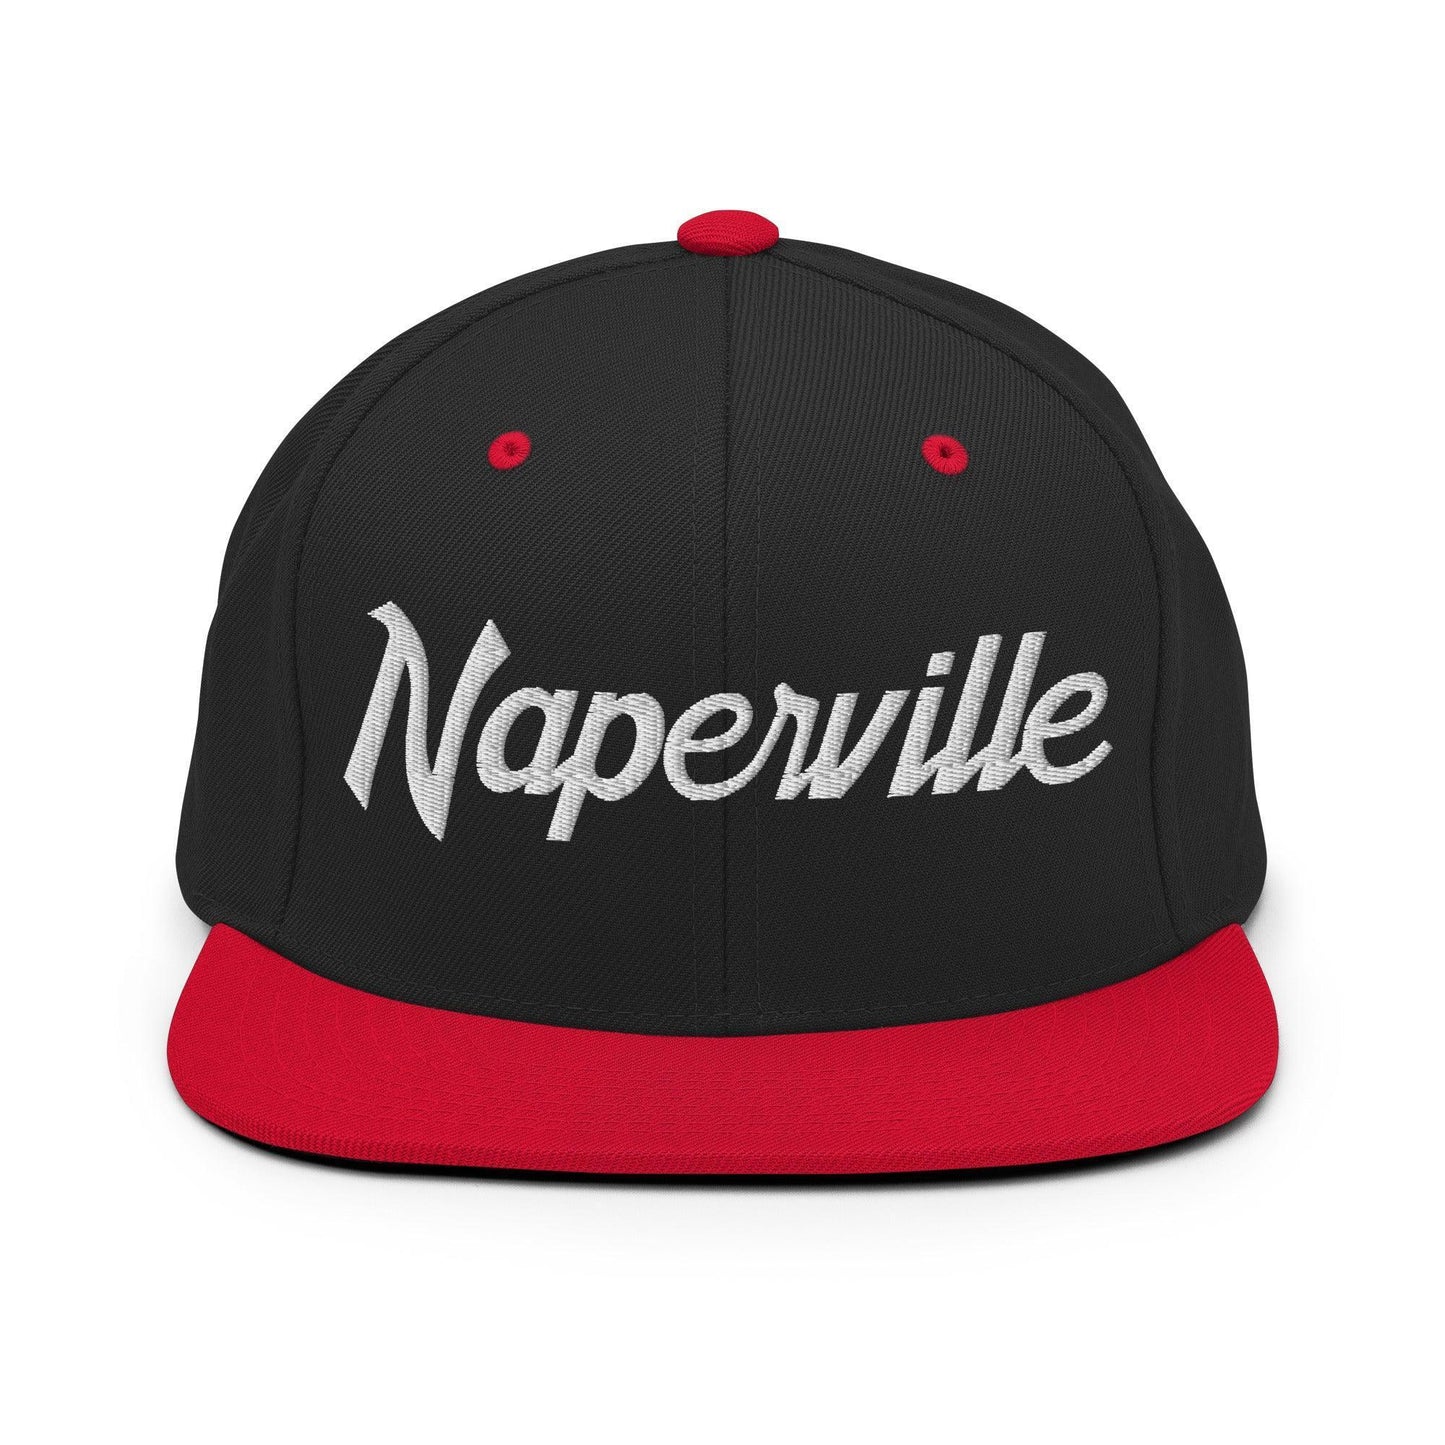 Naperville Script Snapback Hat Black Red